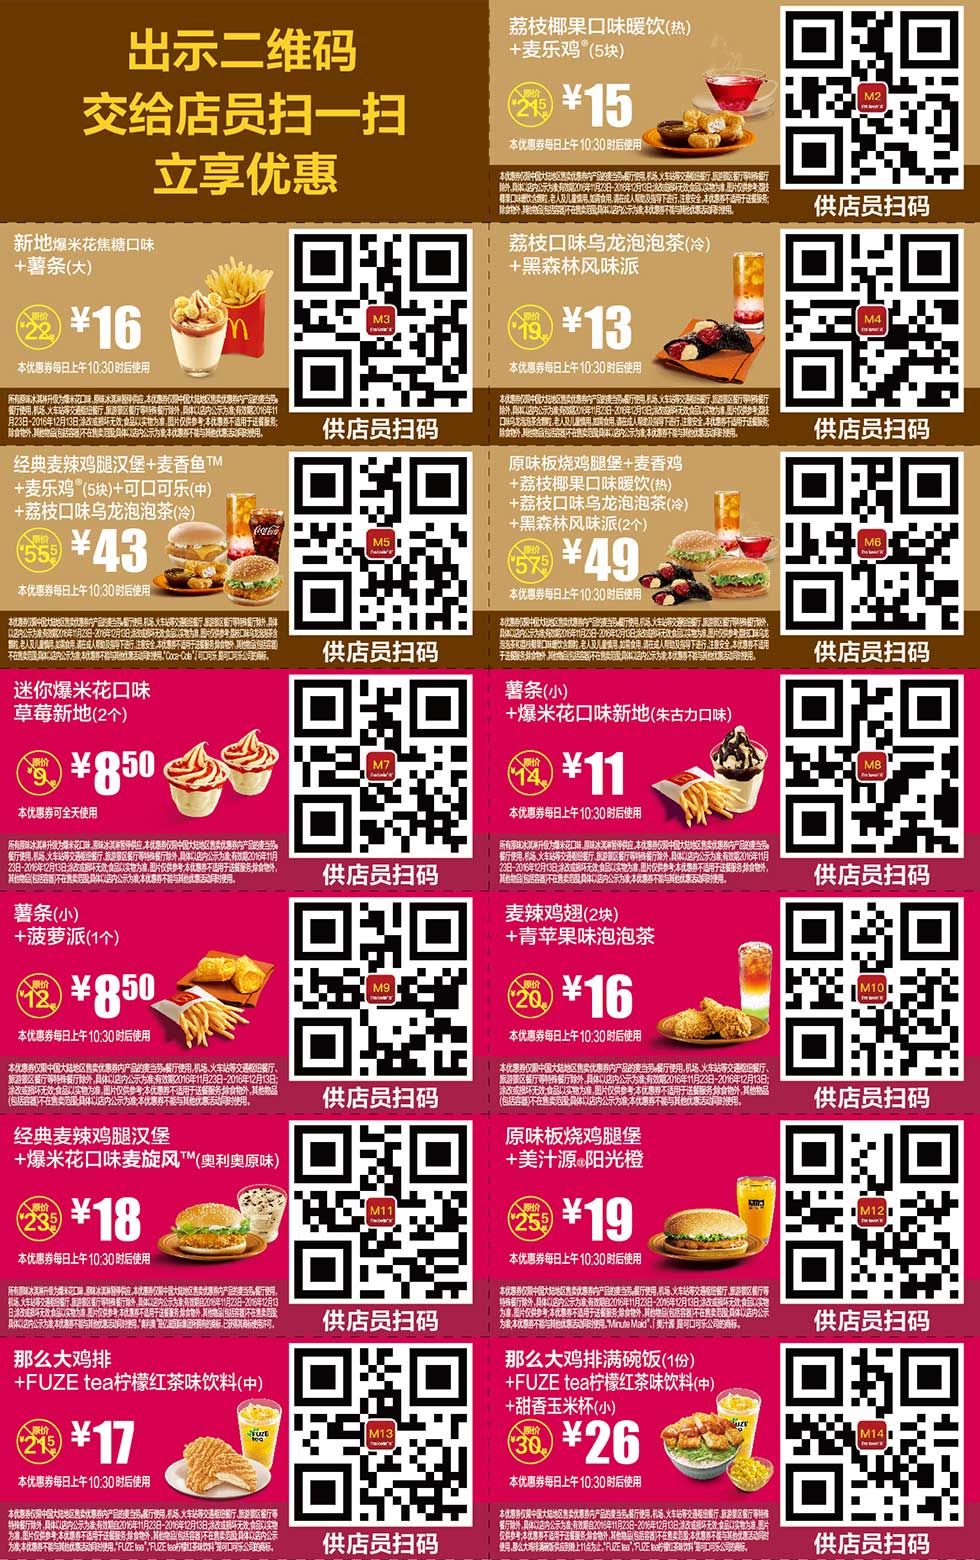 麦当劳优惠券:麦当劳优惠券2016年11月12月手机版整张版本，手机出示券码享受M记优惠 有效期2016年11月23日-2016年12月13日 使用范围:麦当劳中国大陆地区餐厅